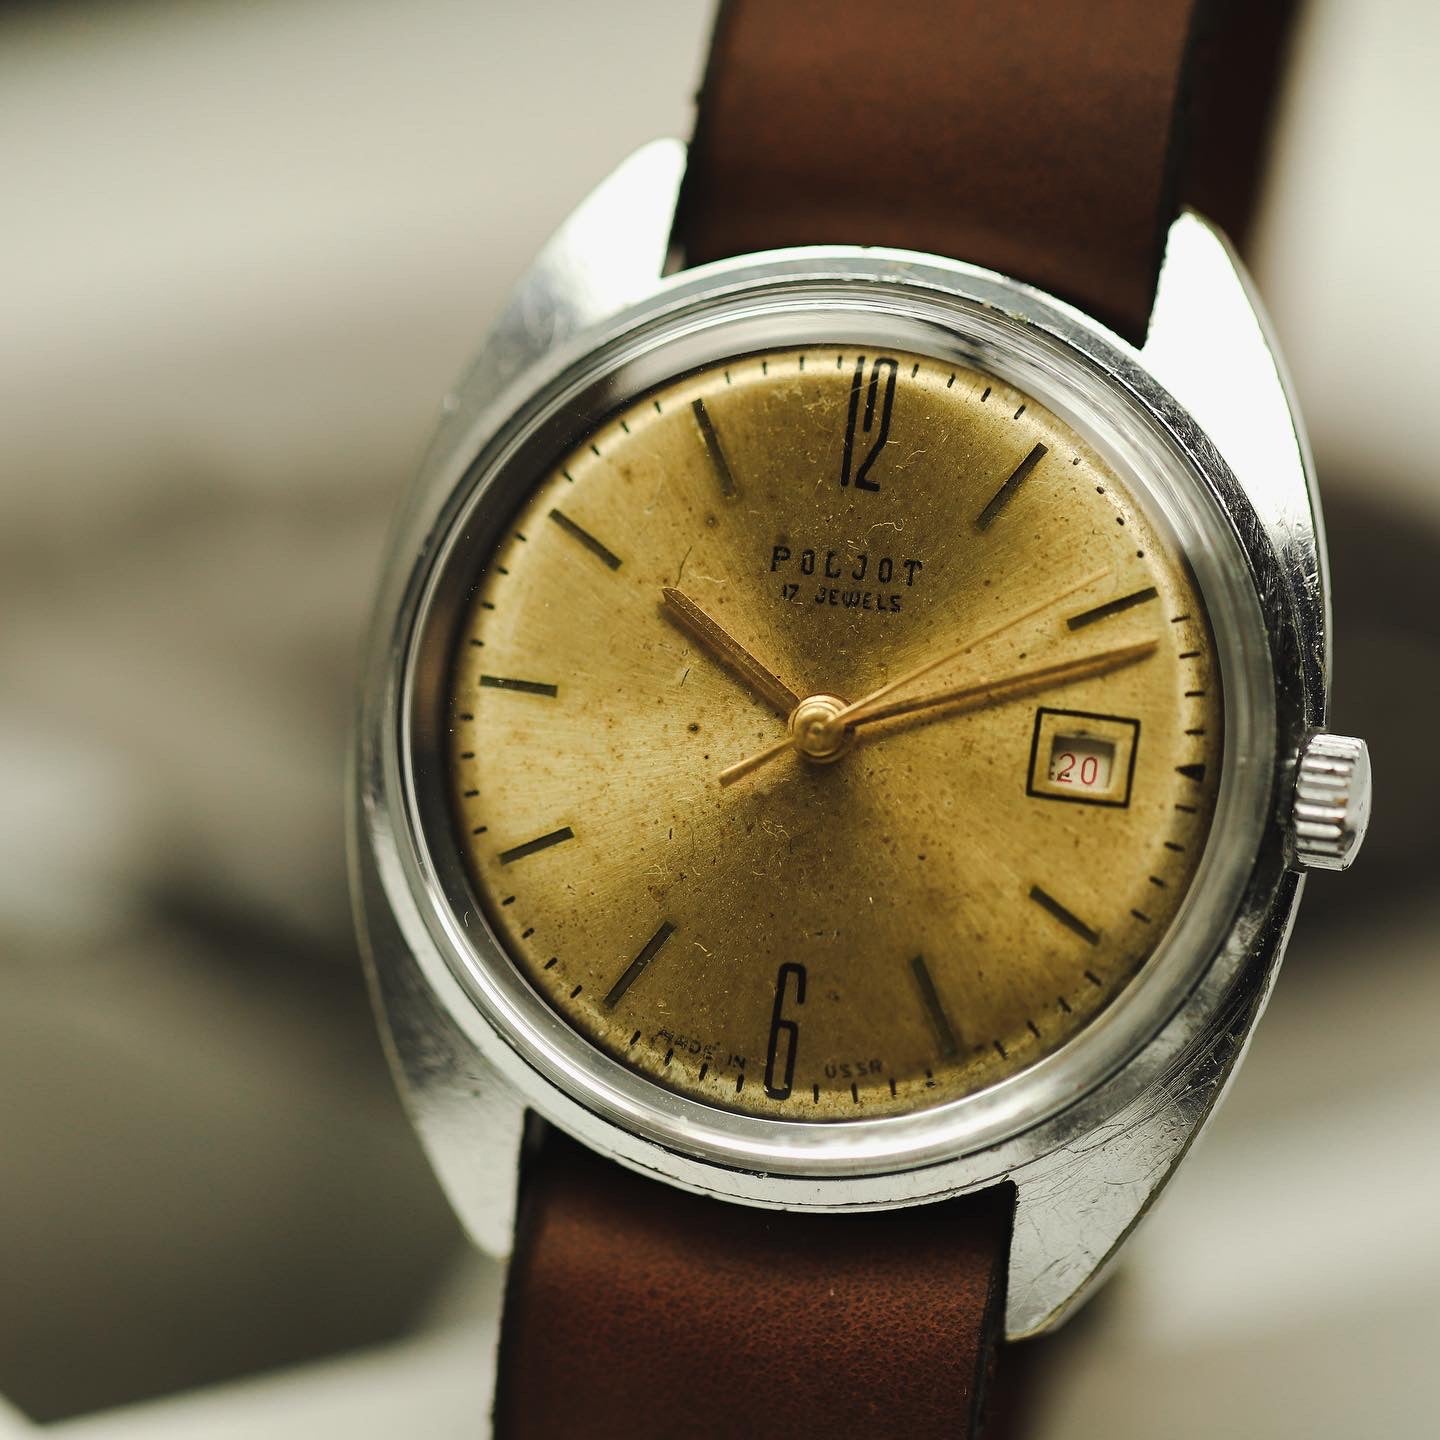 Ultra rare men's vintage soviet wrist watch Poljot with leather nato strap